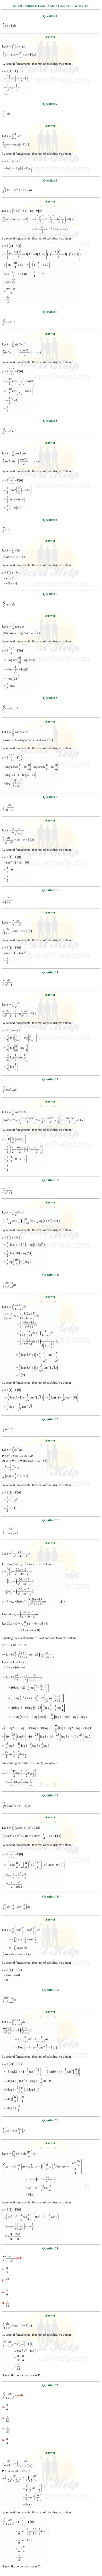 ex.7.9 Class 12 Math Chapter 7 ncert solutions